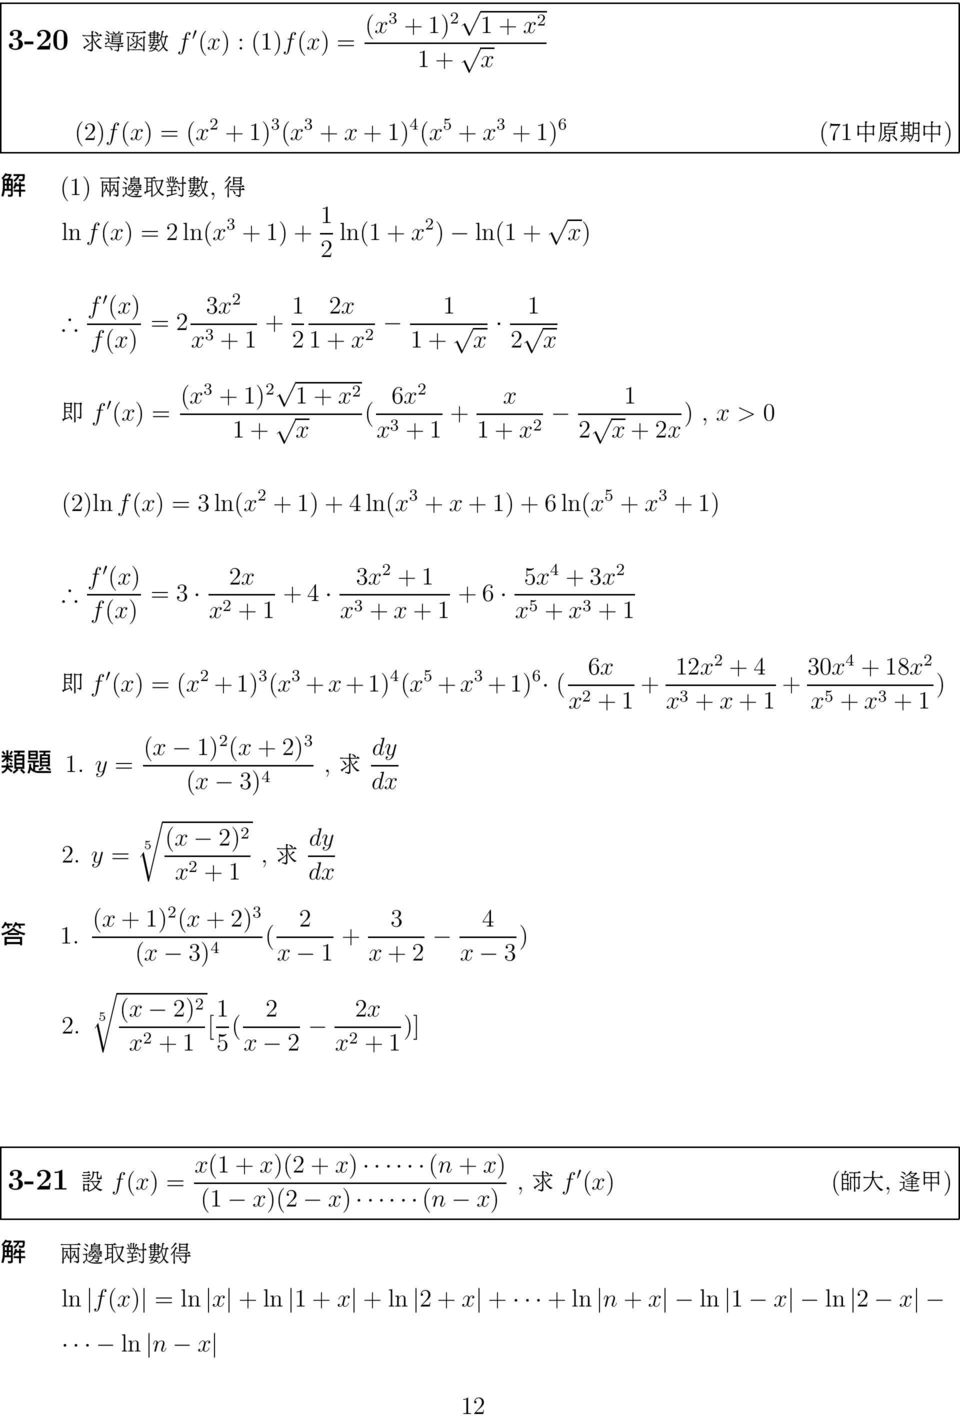 3 + ¹ f (x) (x + ) 3 (x 3 + x + ) 4 (x 5 + x 3 + ) 6 6x ( x + + x + 4 x 3 + x + + 30x4 + 8x x 5 + x 3 + ) éæ. y (x ) (x + ) 3 (x 3) 4, dy. y 5 (x ) x +, dy.